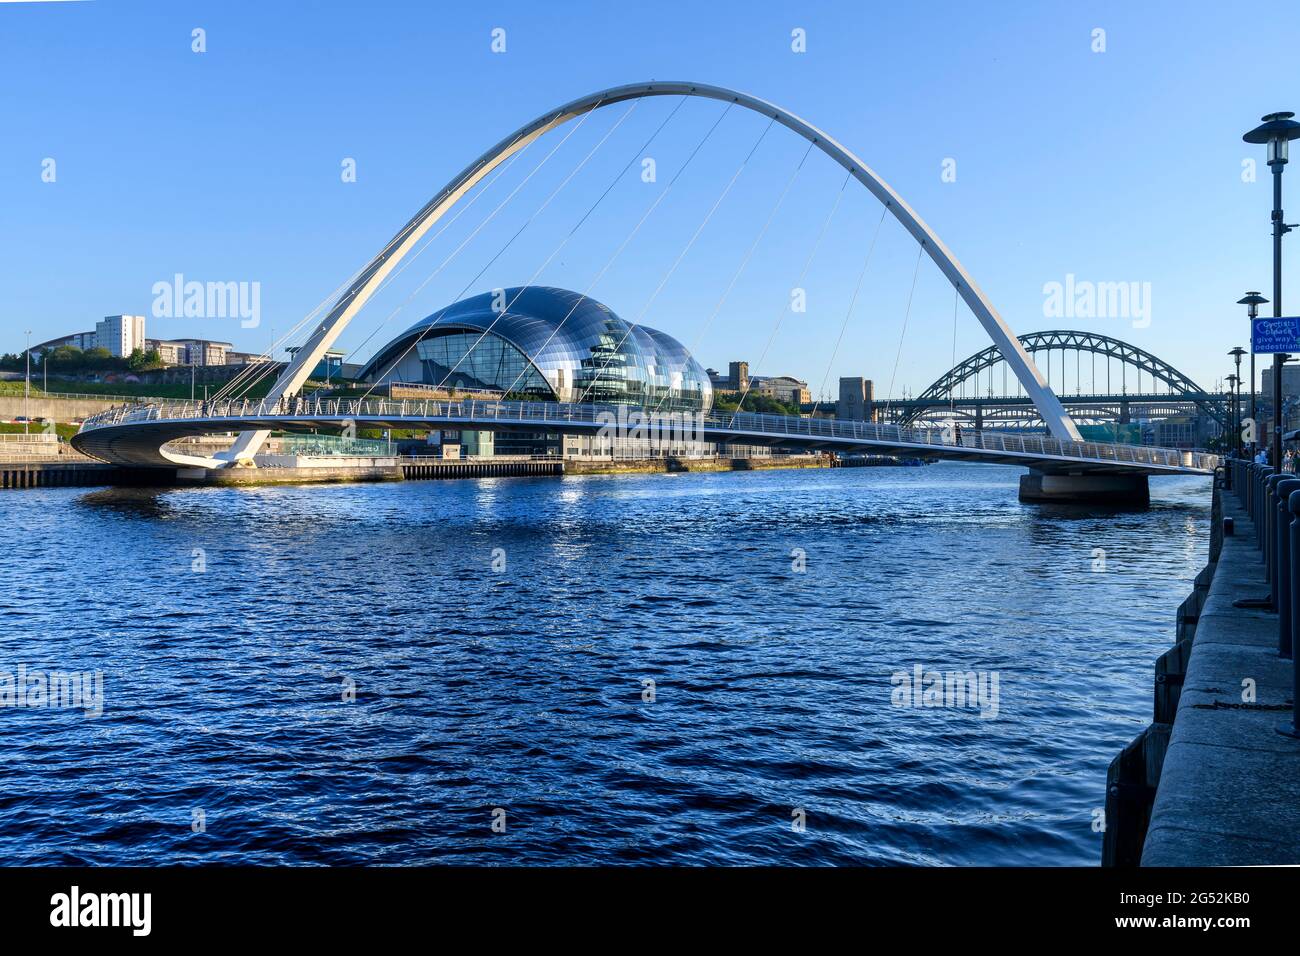 Konzertsaal Sage Gateshead, die Tyne Bridge, die Gateshead mit Newcastle verbindet, und die Gateshead Millennium Bridge für Fußgänger und Radfahrer. Stockfoto